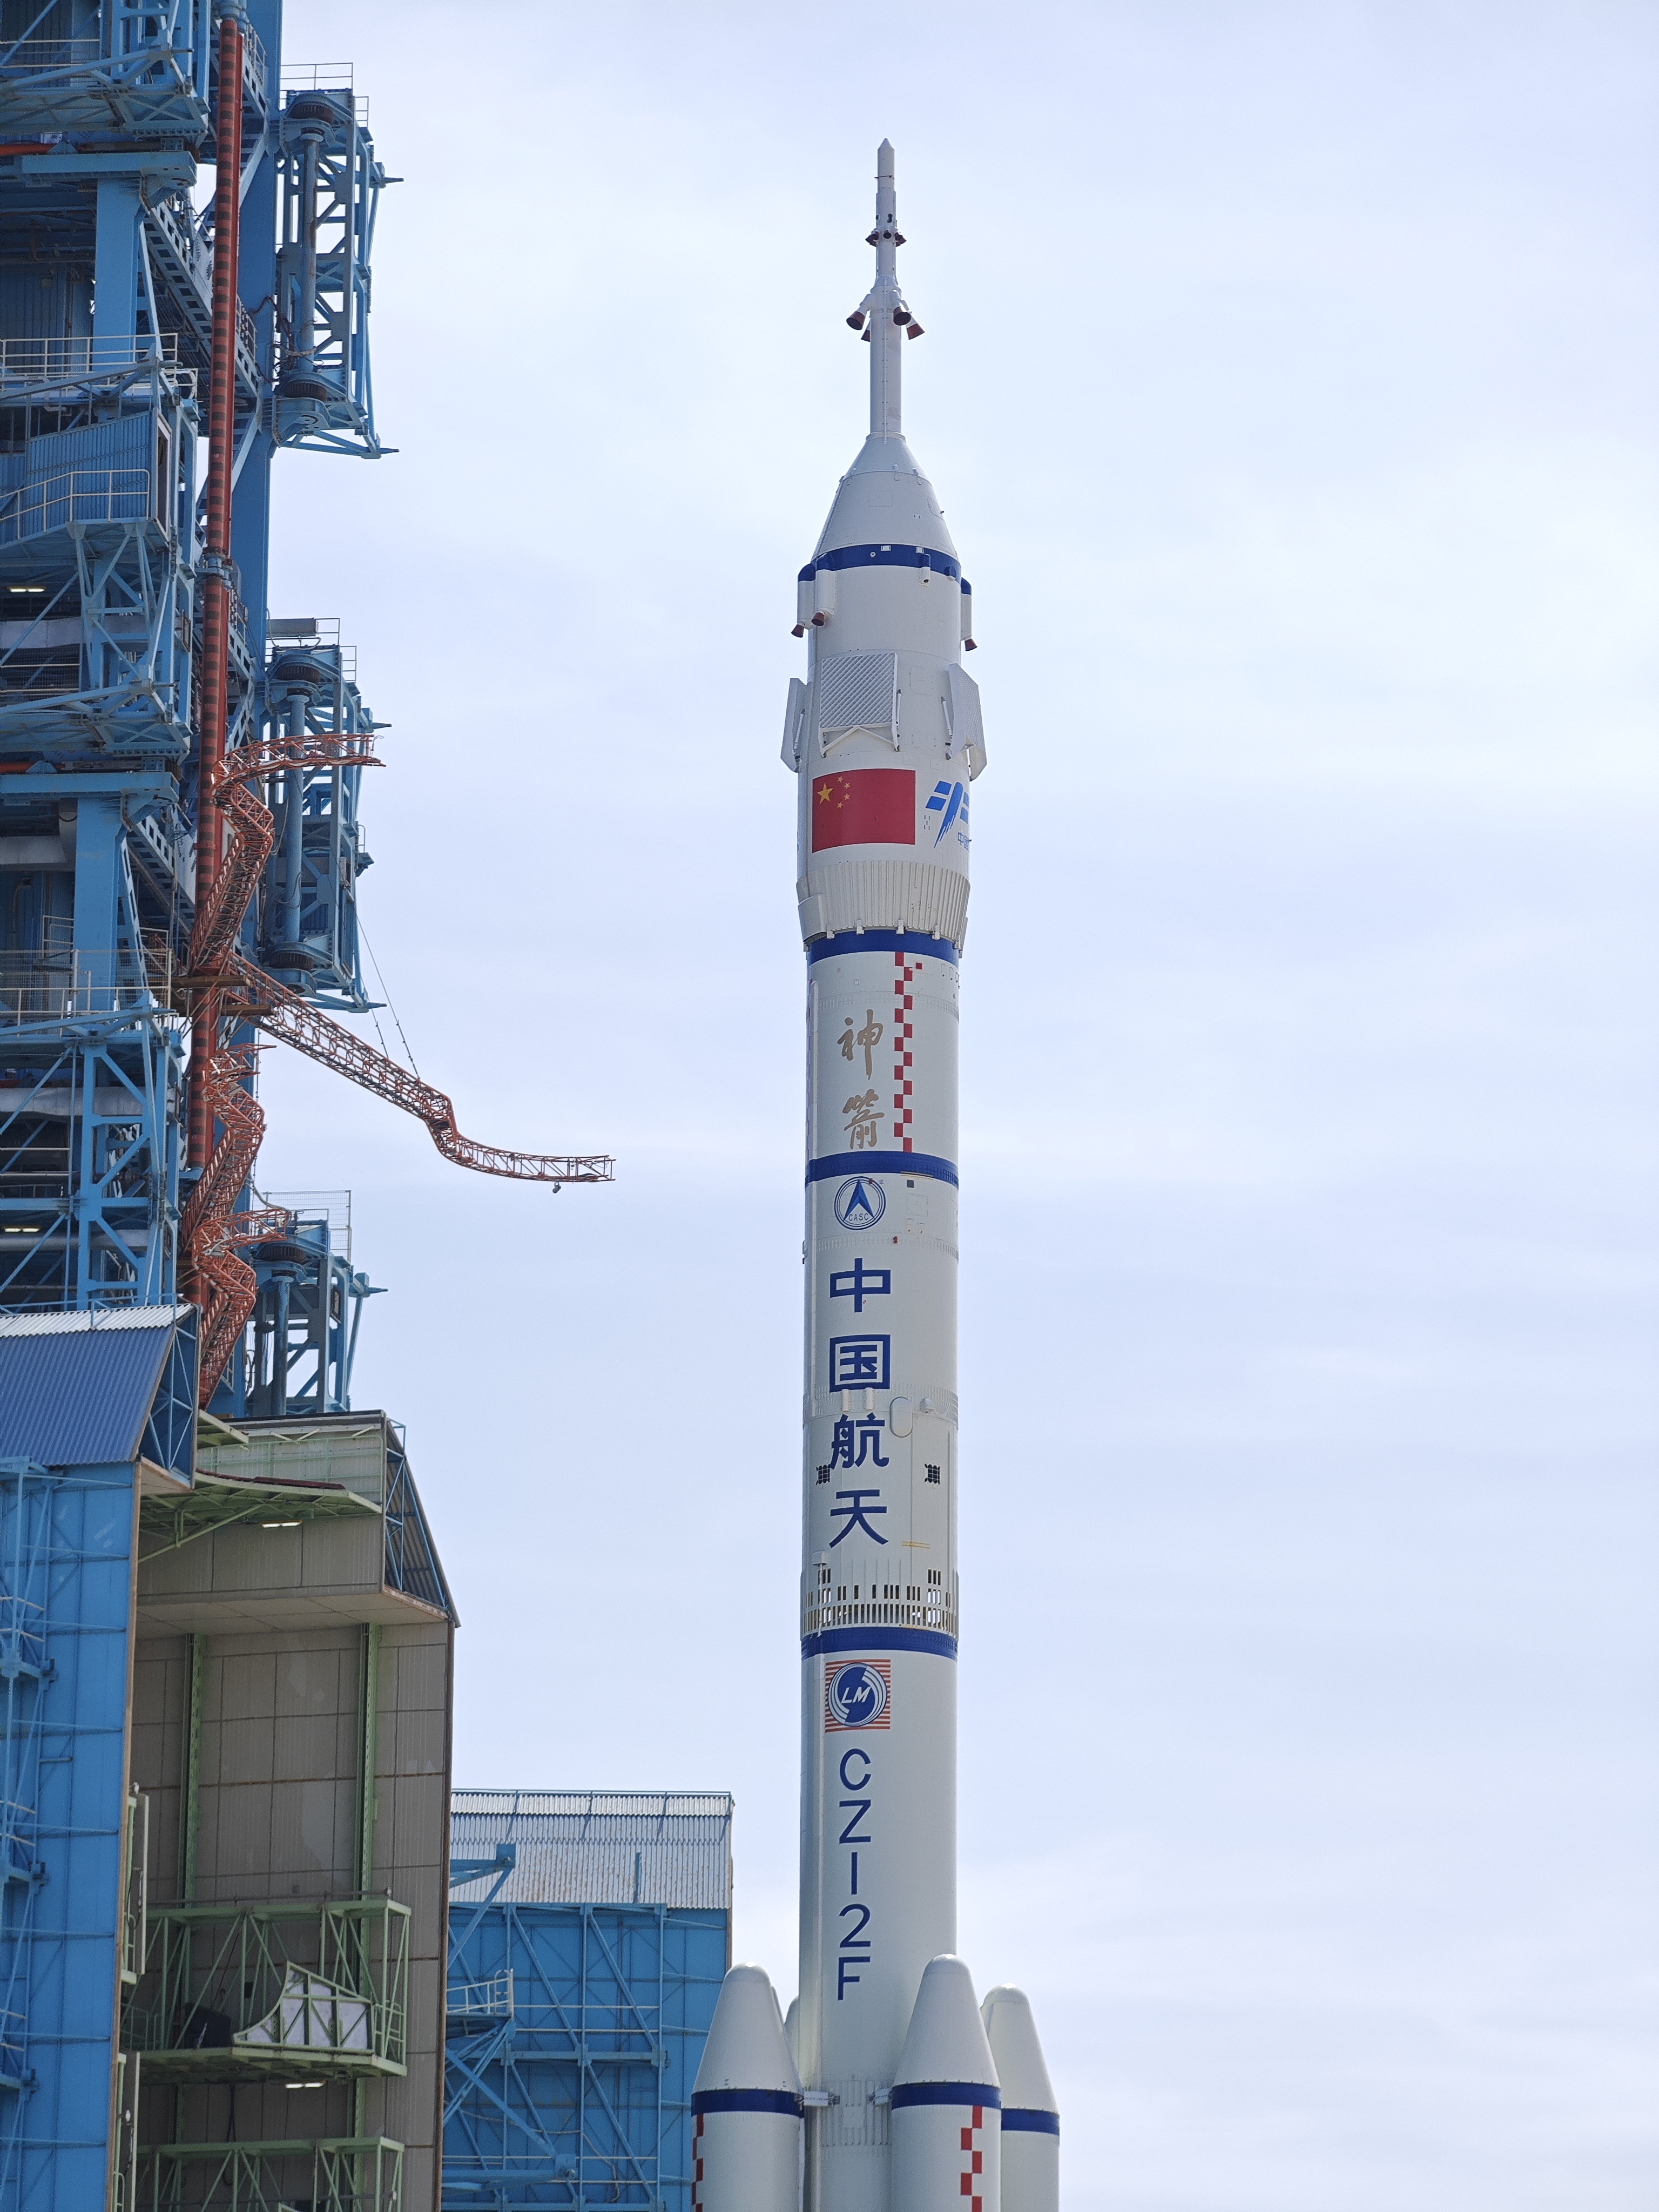 Duża biała rakieta z czterema małymi dopalaczami wtacza się na platformę startową otoczona czerwonymi flagami z żółtymi chińskimi znakami